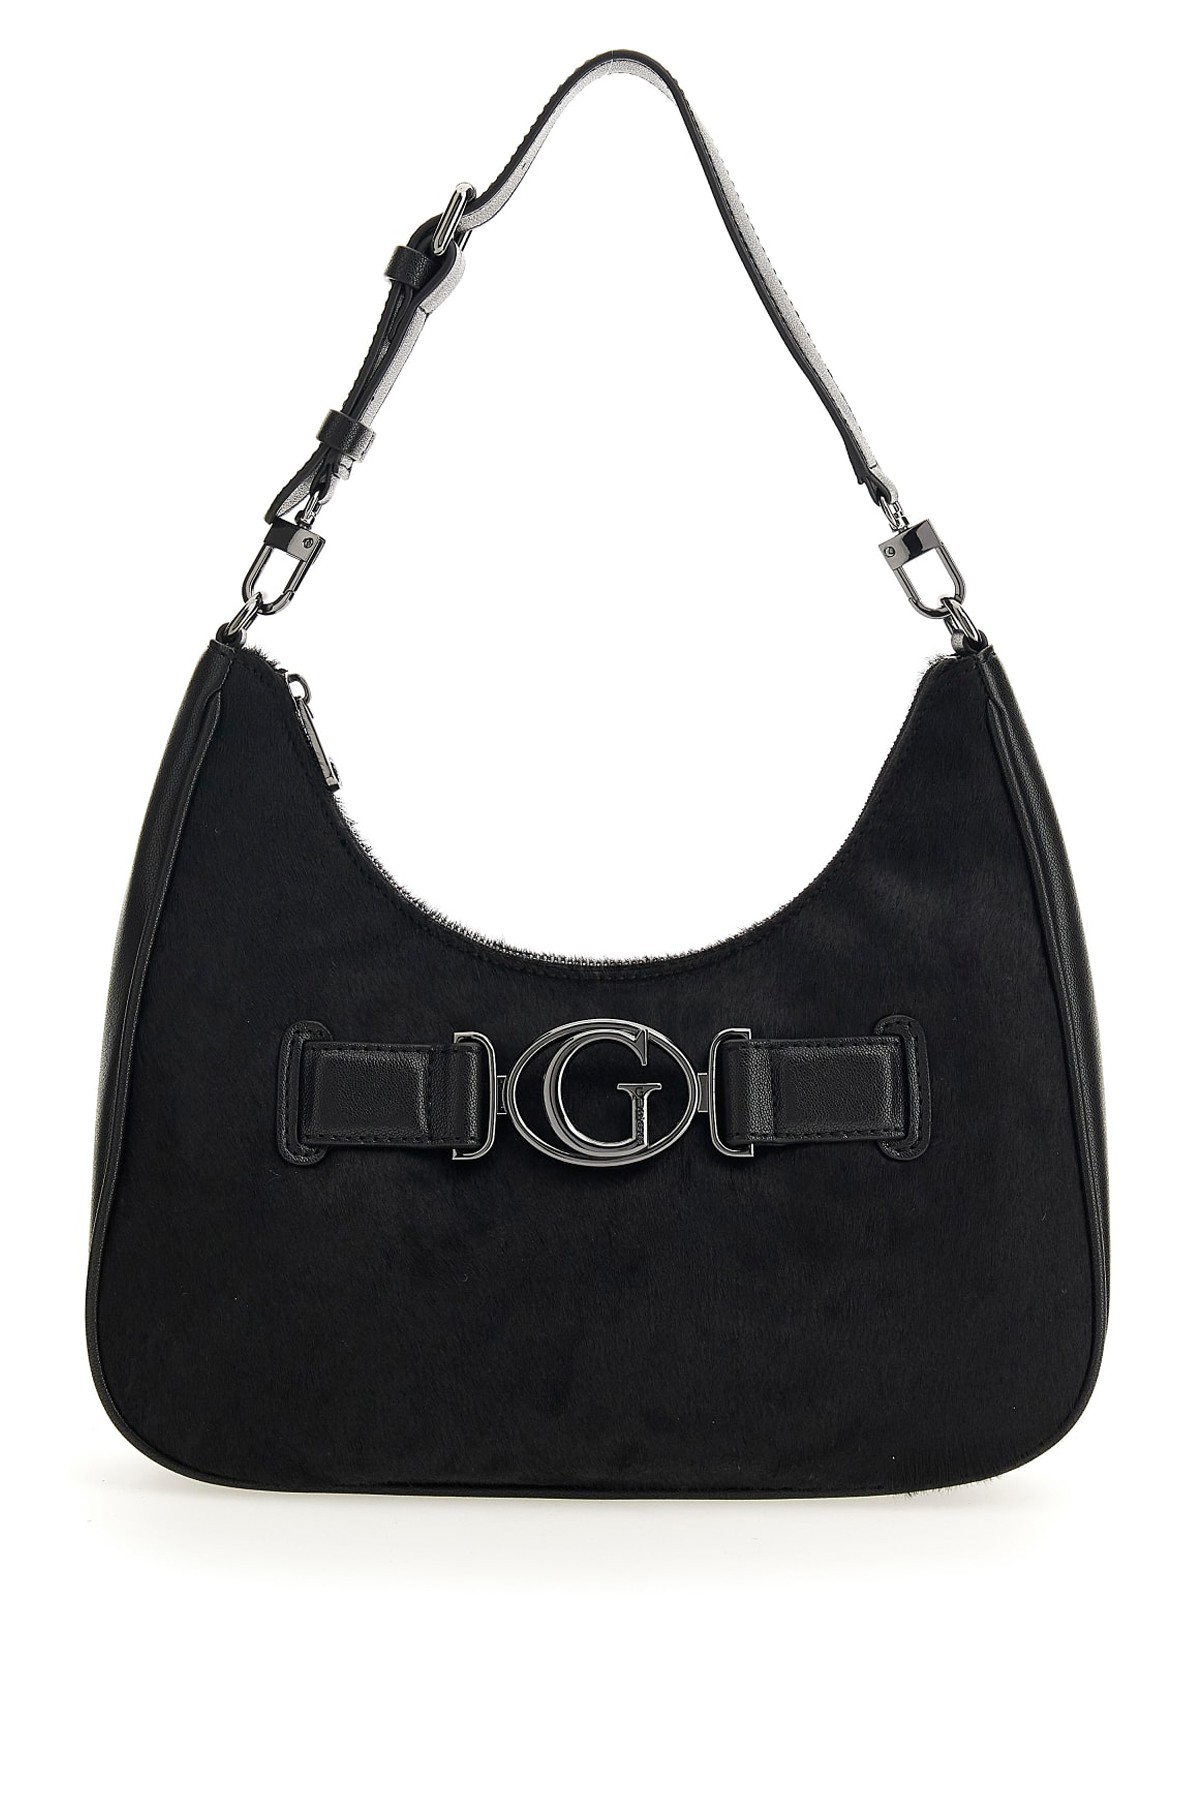 Handbag HWHM84 14020-full-2